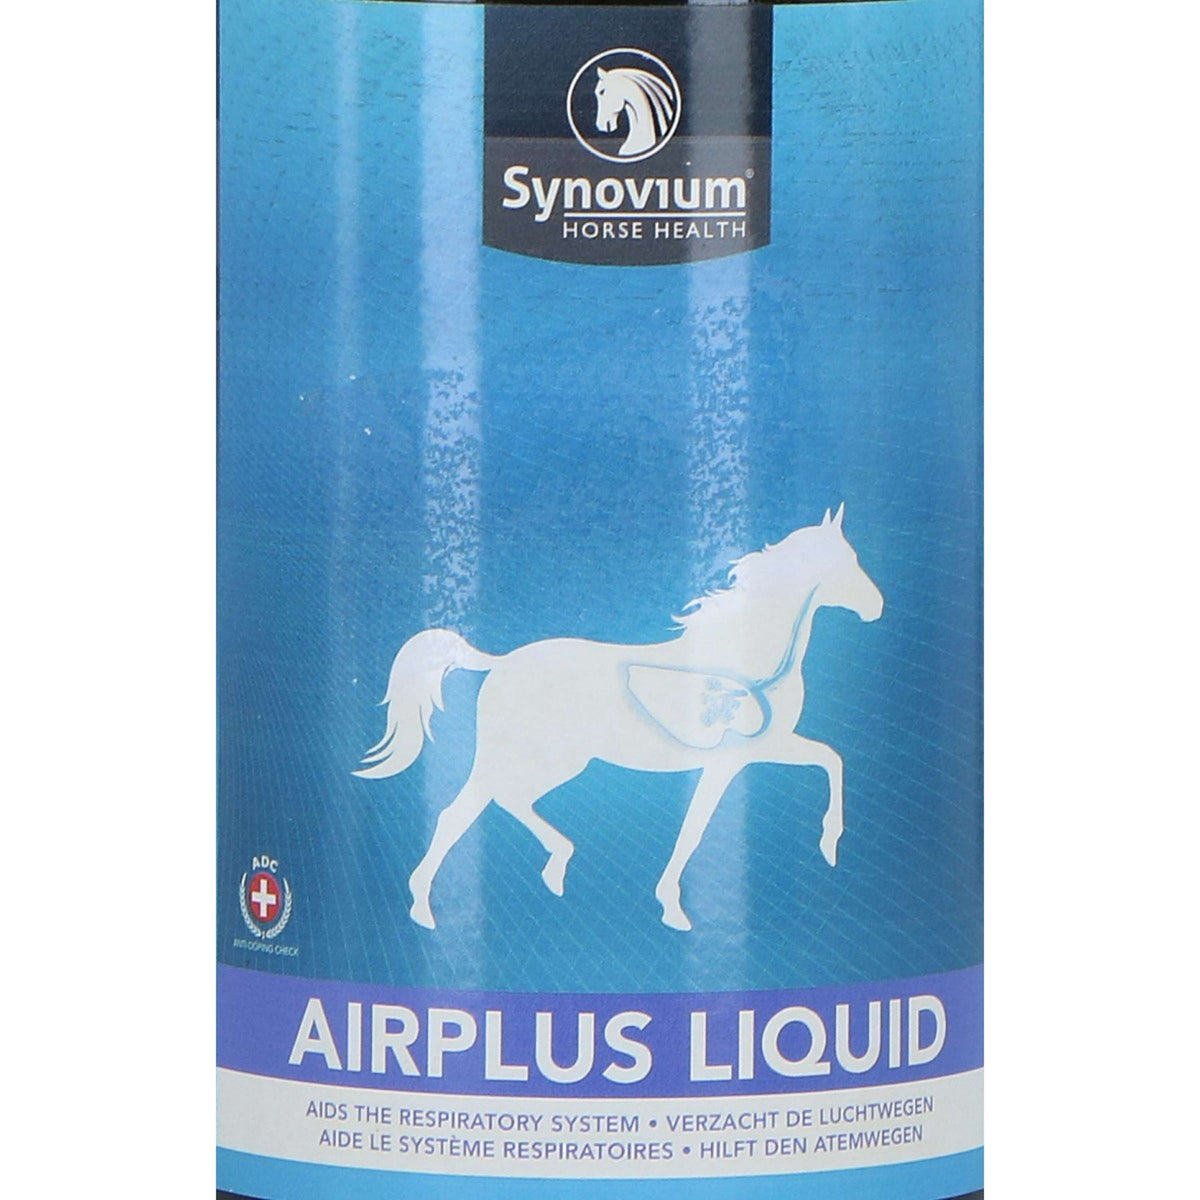 Synovium Air Plus Liquid